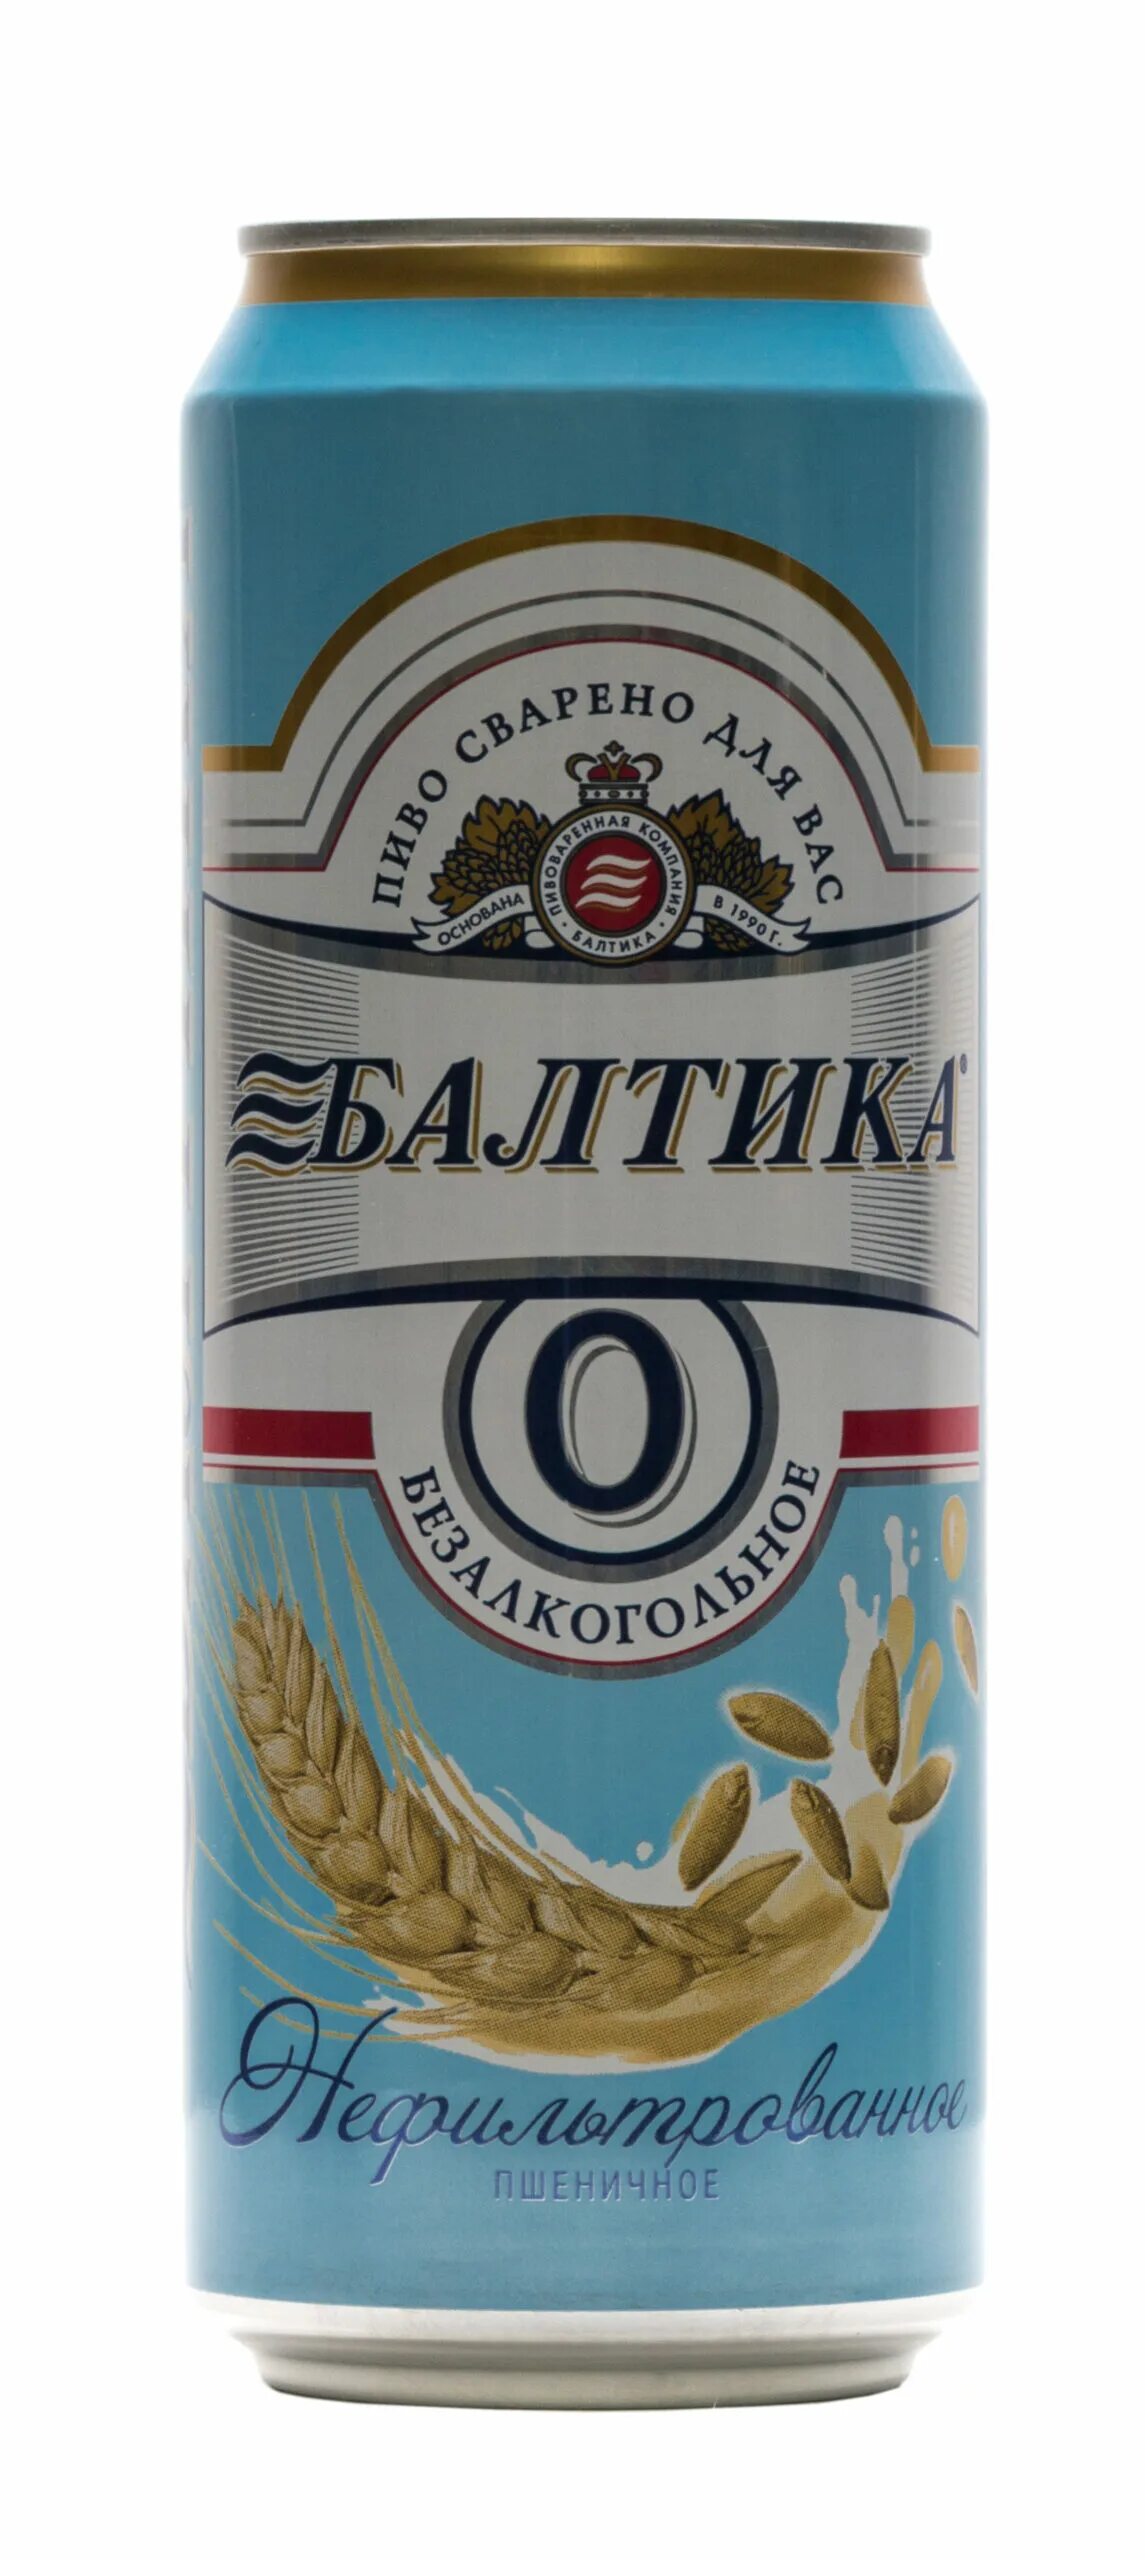 Пиво Балтика №0 пшеничное нефильтрованное, 0,45л. Пиво Балтика 0 безалкогольное пшеничное. Пиво Балтика пшеничное нефильтрованное. Пивной напиток Балтика 0 безалкогольное пшеничное 0.45л.